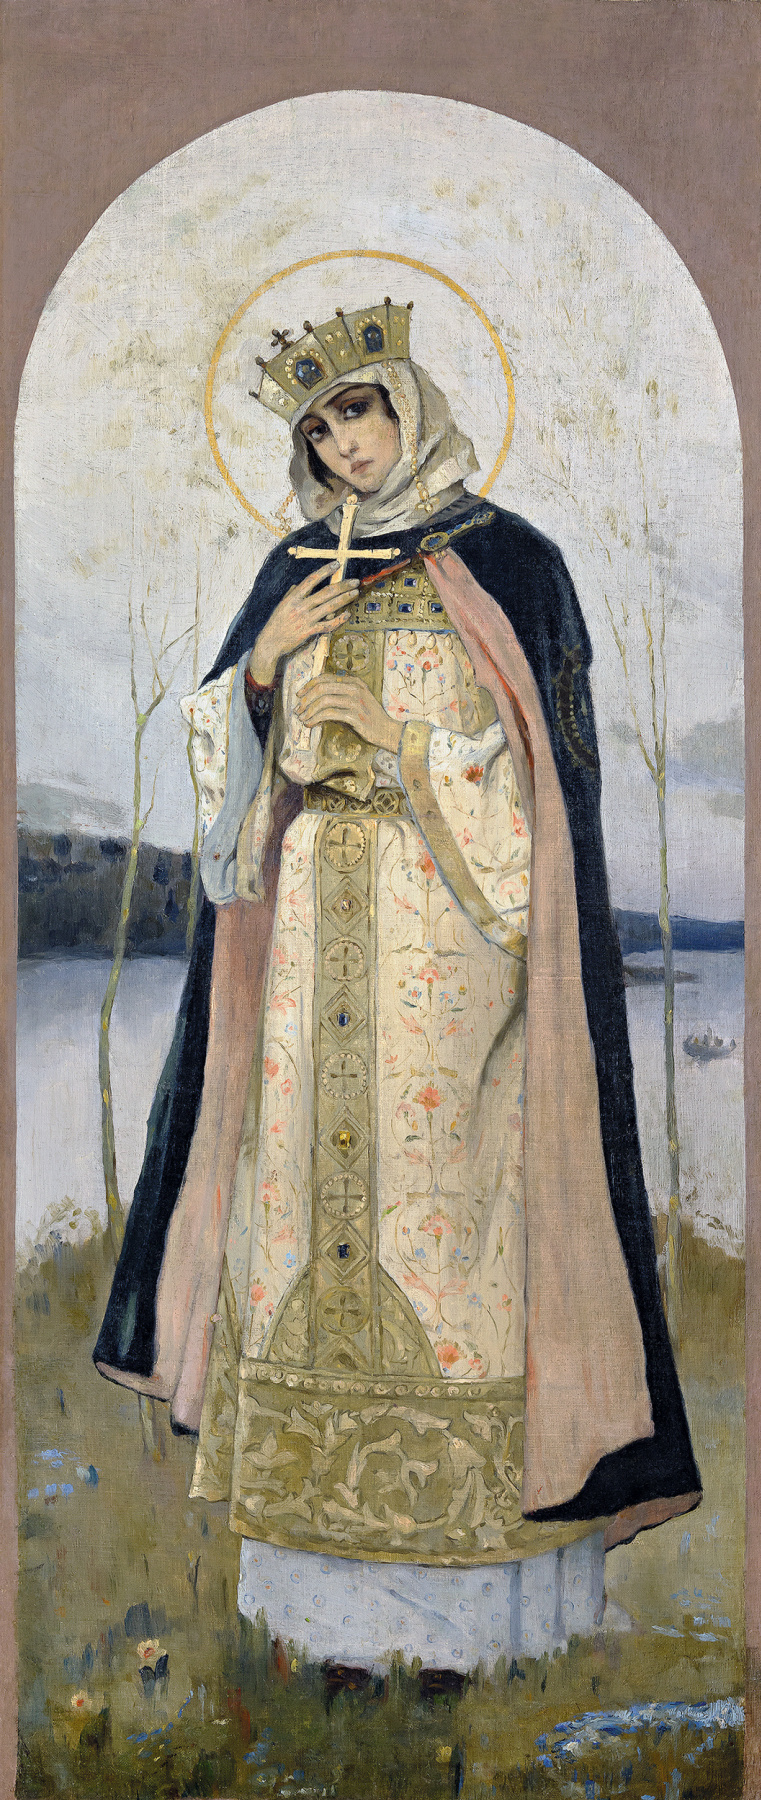 Mikhail Vasilyevich Nesterov. Sainte Princesse Olga. l'image miniature de l'iconostase de l'allée au sud dans le chœur de la cathédrale Saint-Vladimir à Kiev